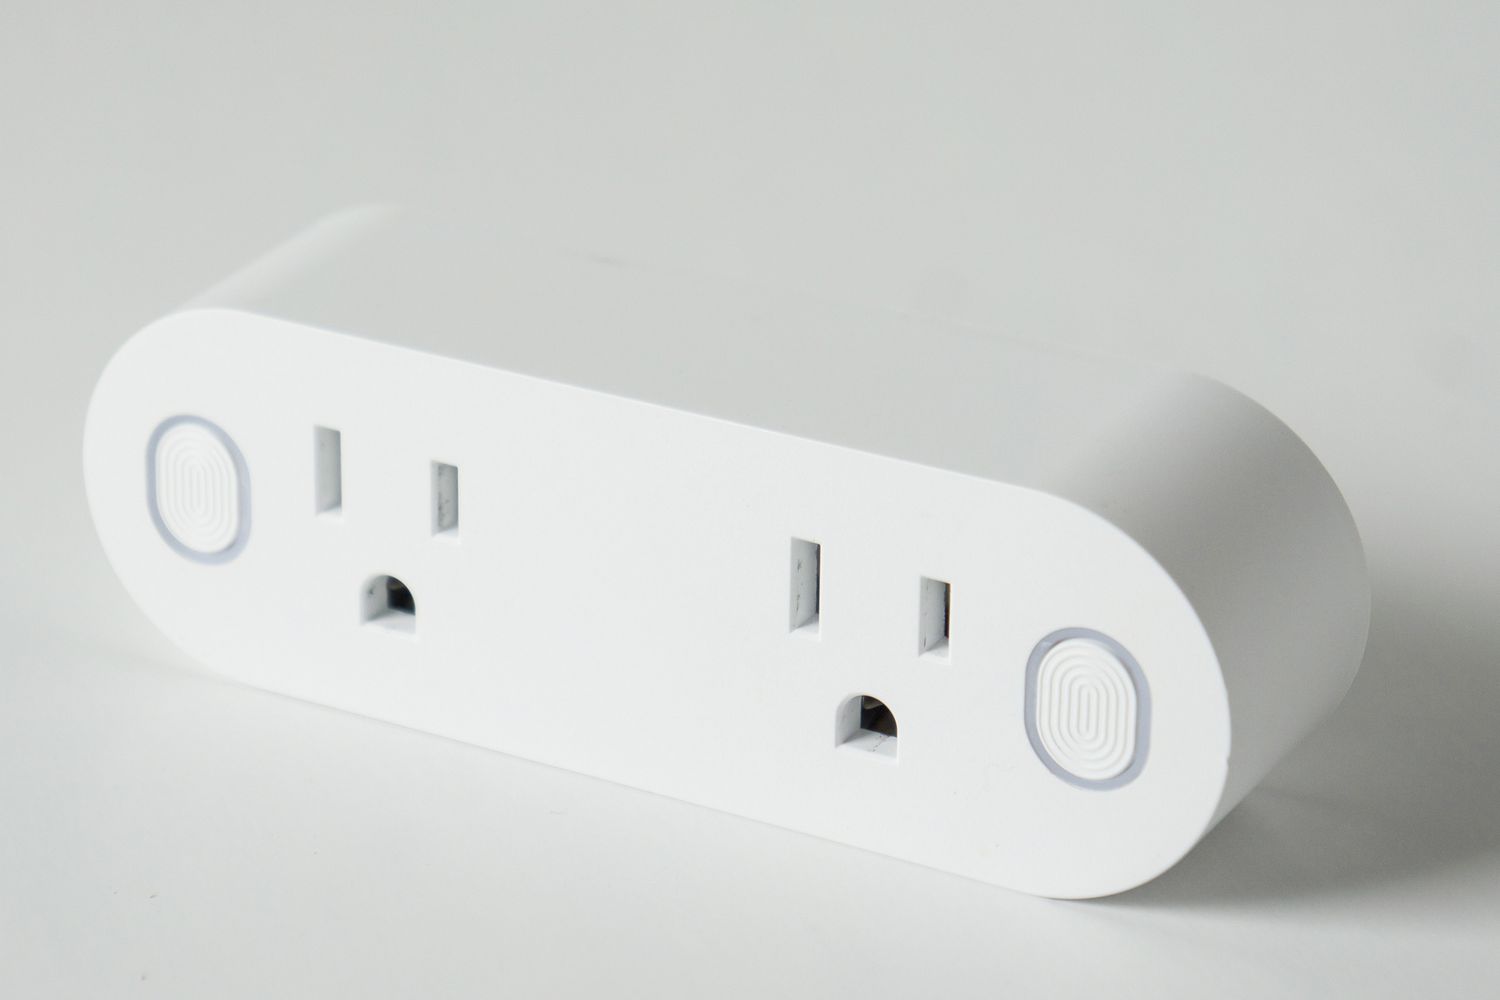 Closeup of a smart wall plug